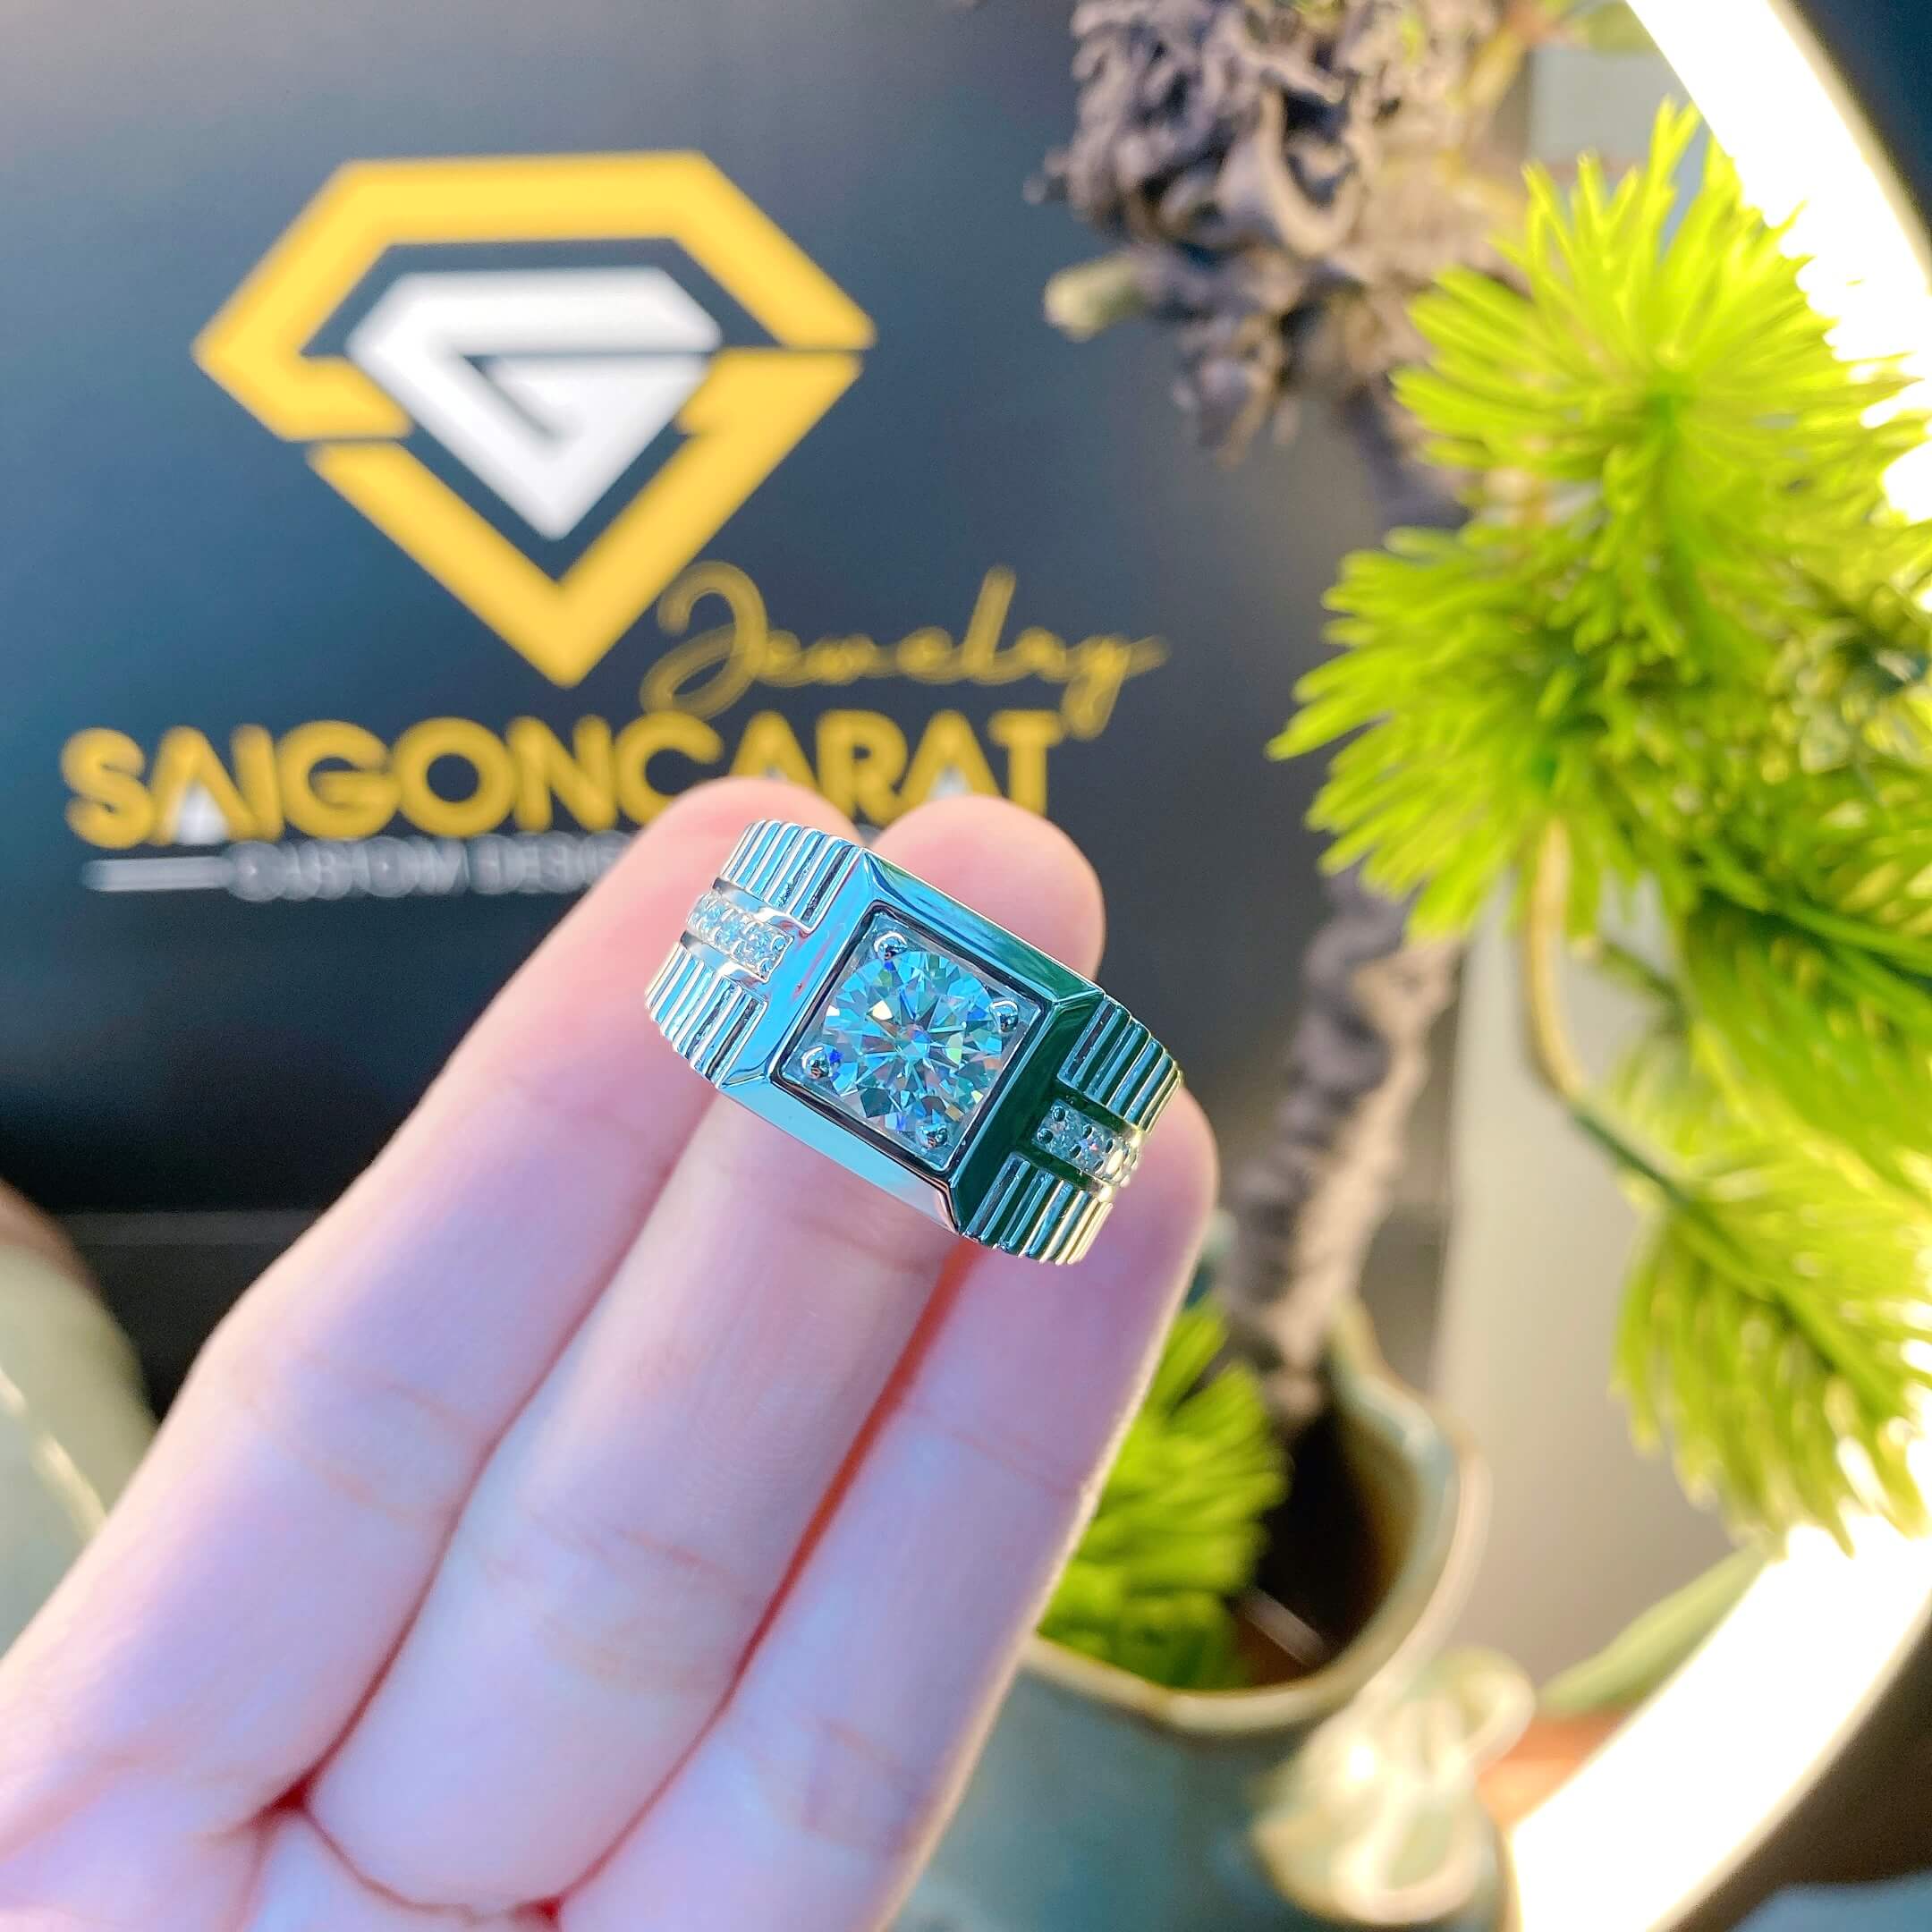 Mua Ổ Nhẫn Kim Cương Đẹp Tại SaigonCarat